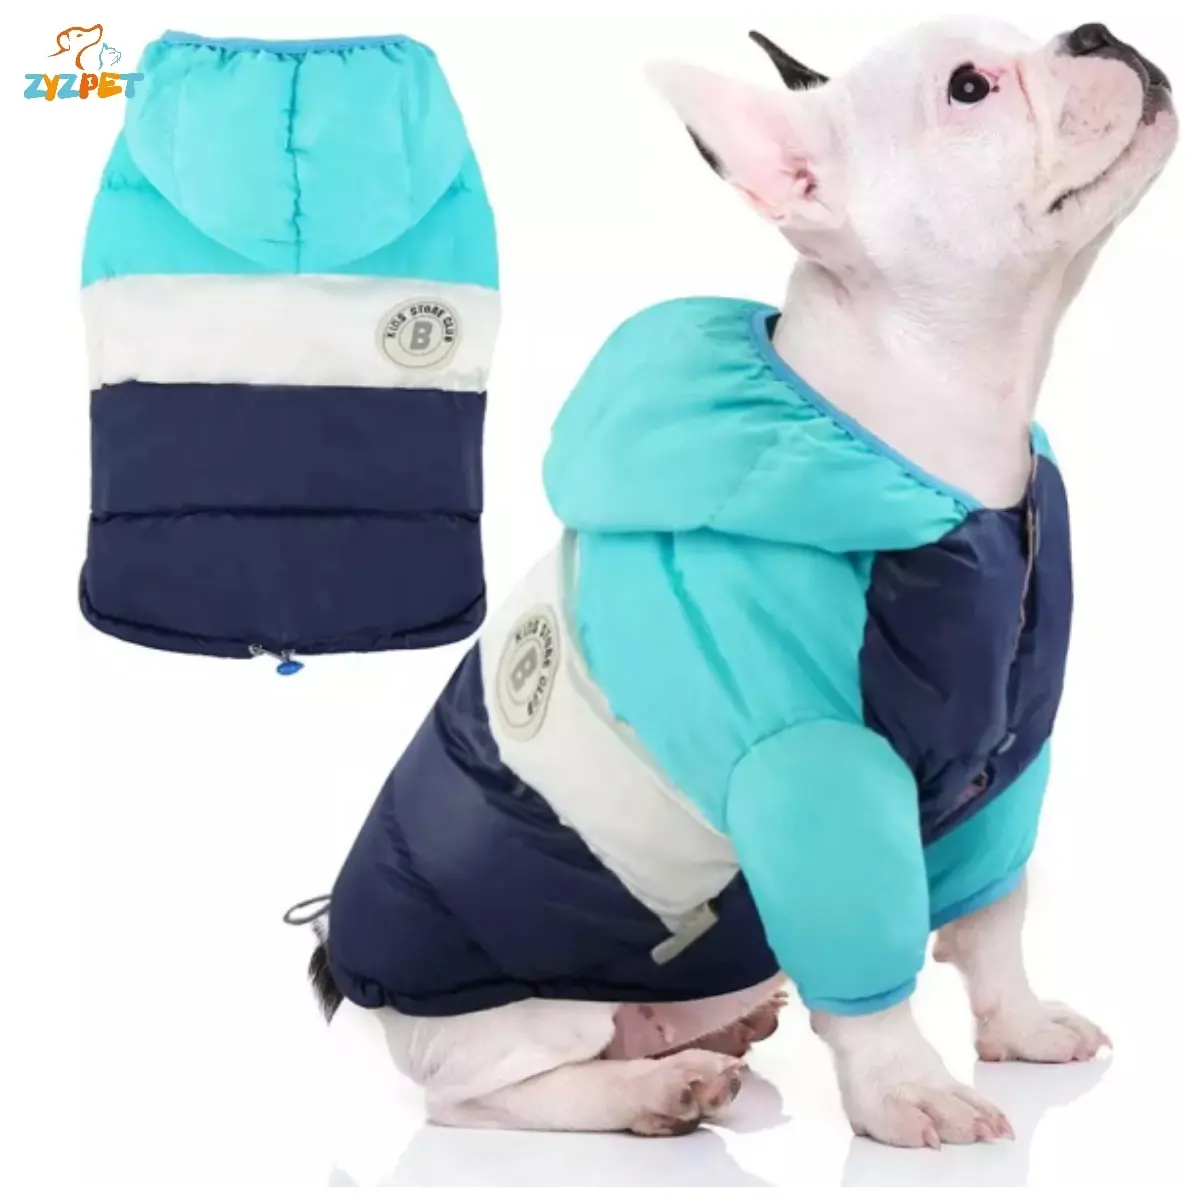 ZYZ PET köpek kışlık mont küçük orta büyük köpekler için evcil köpek kıyafeti kış ceket